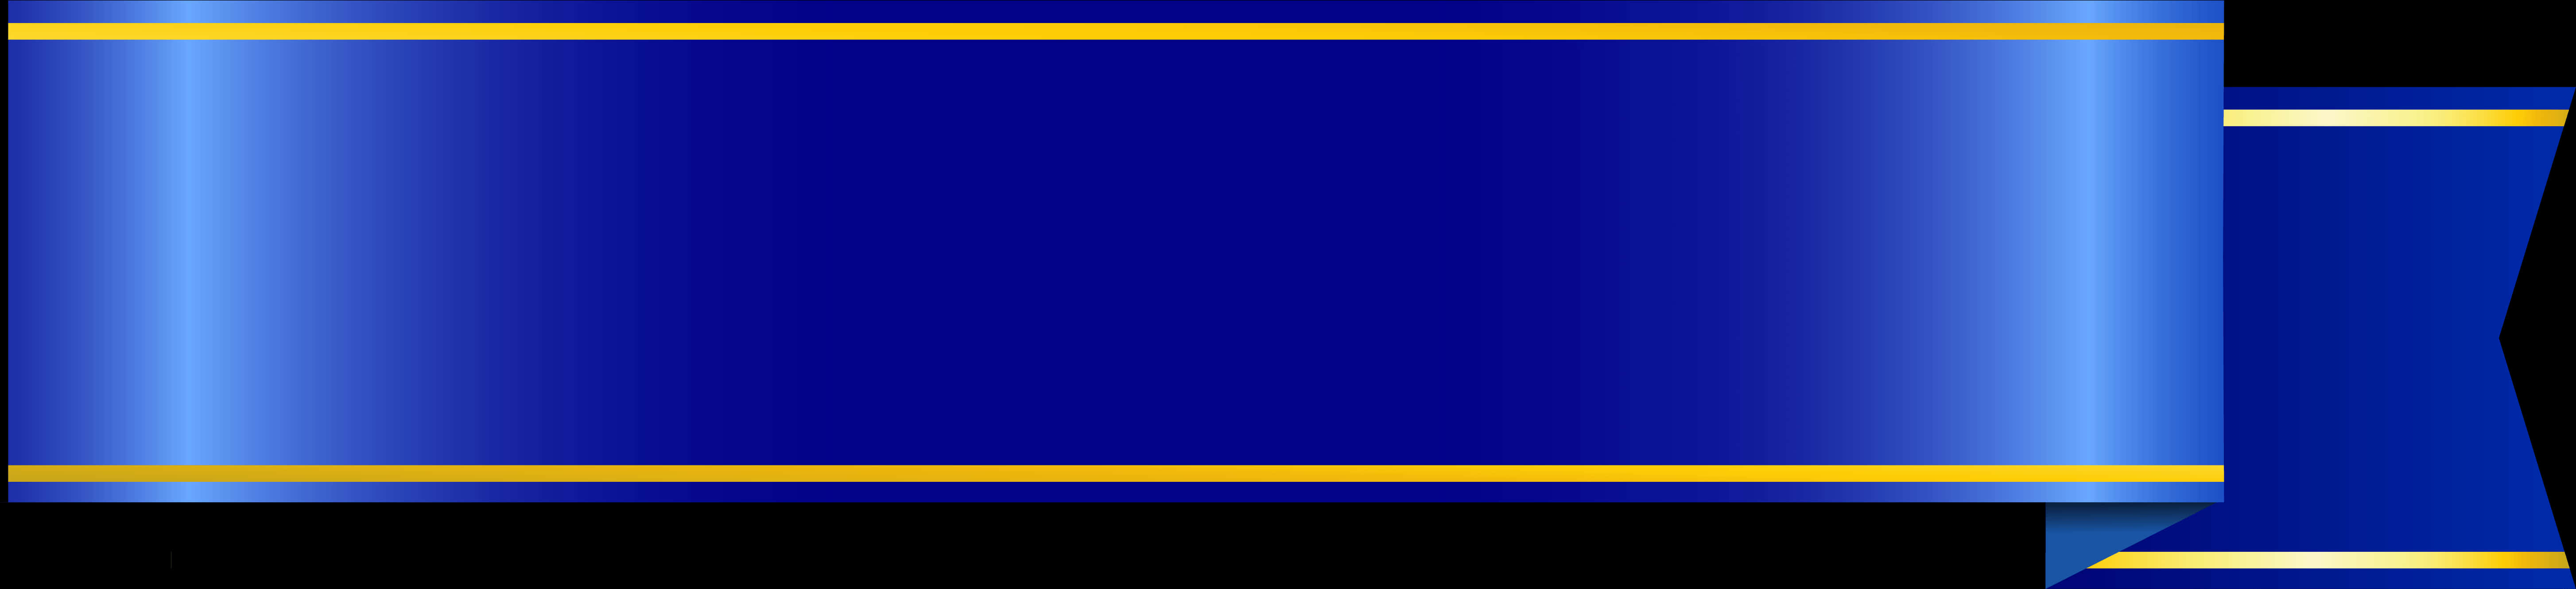 Blue Gold Banner Ribbon Design PNG image